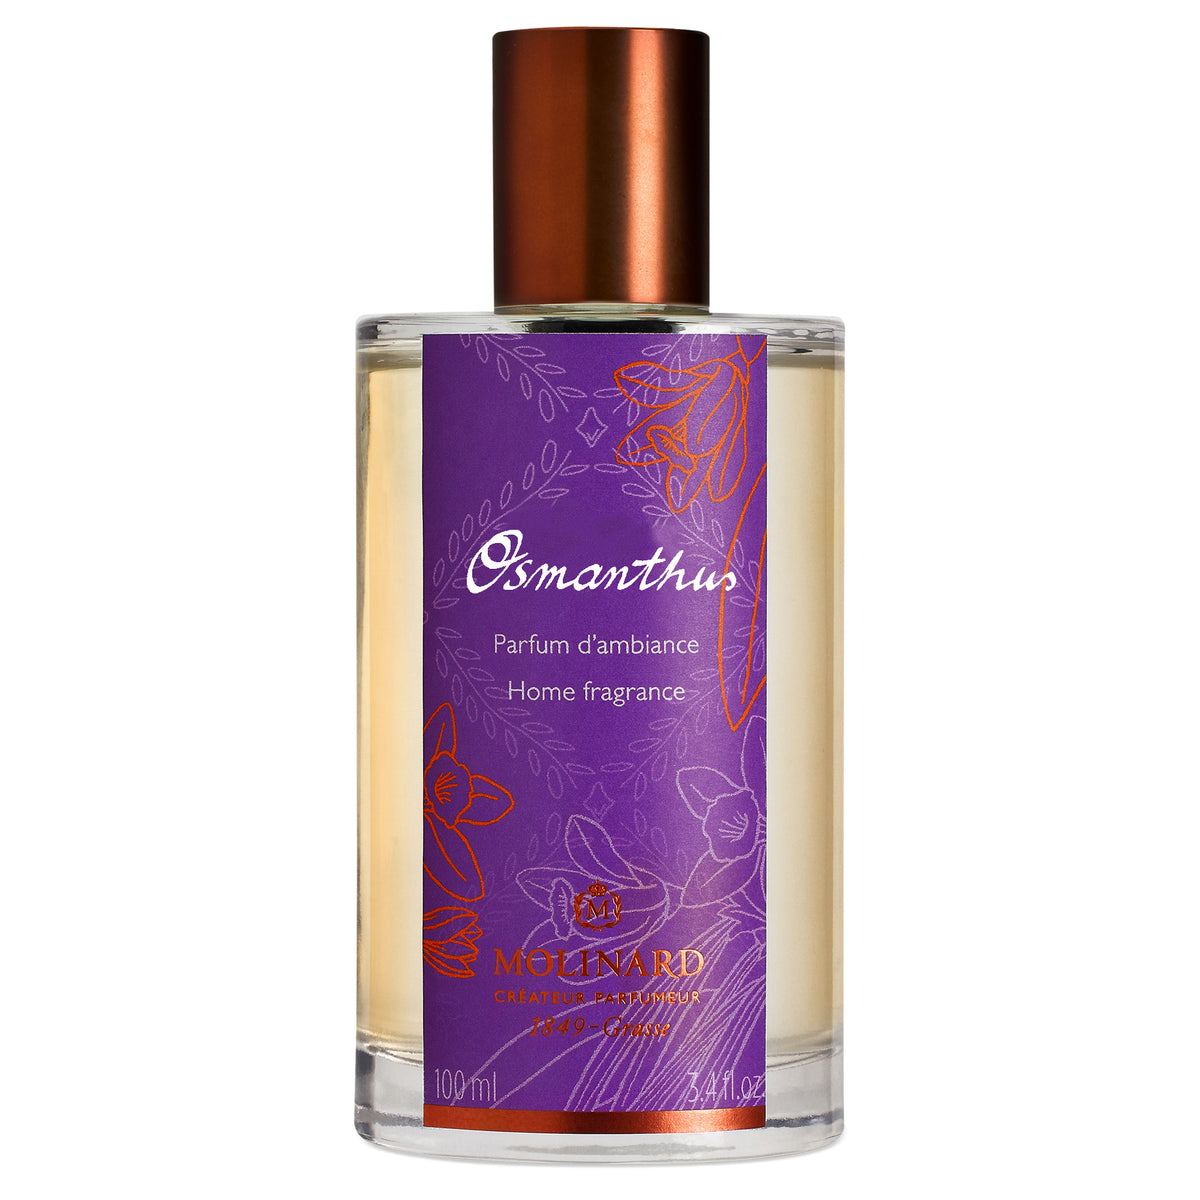 Osmanthus room fragrance